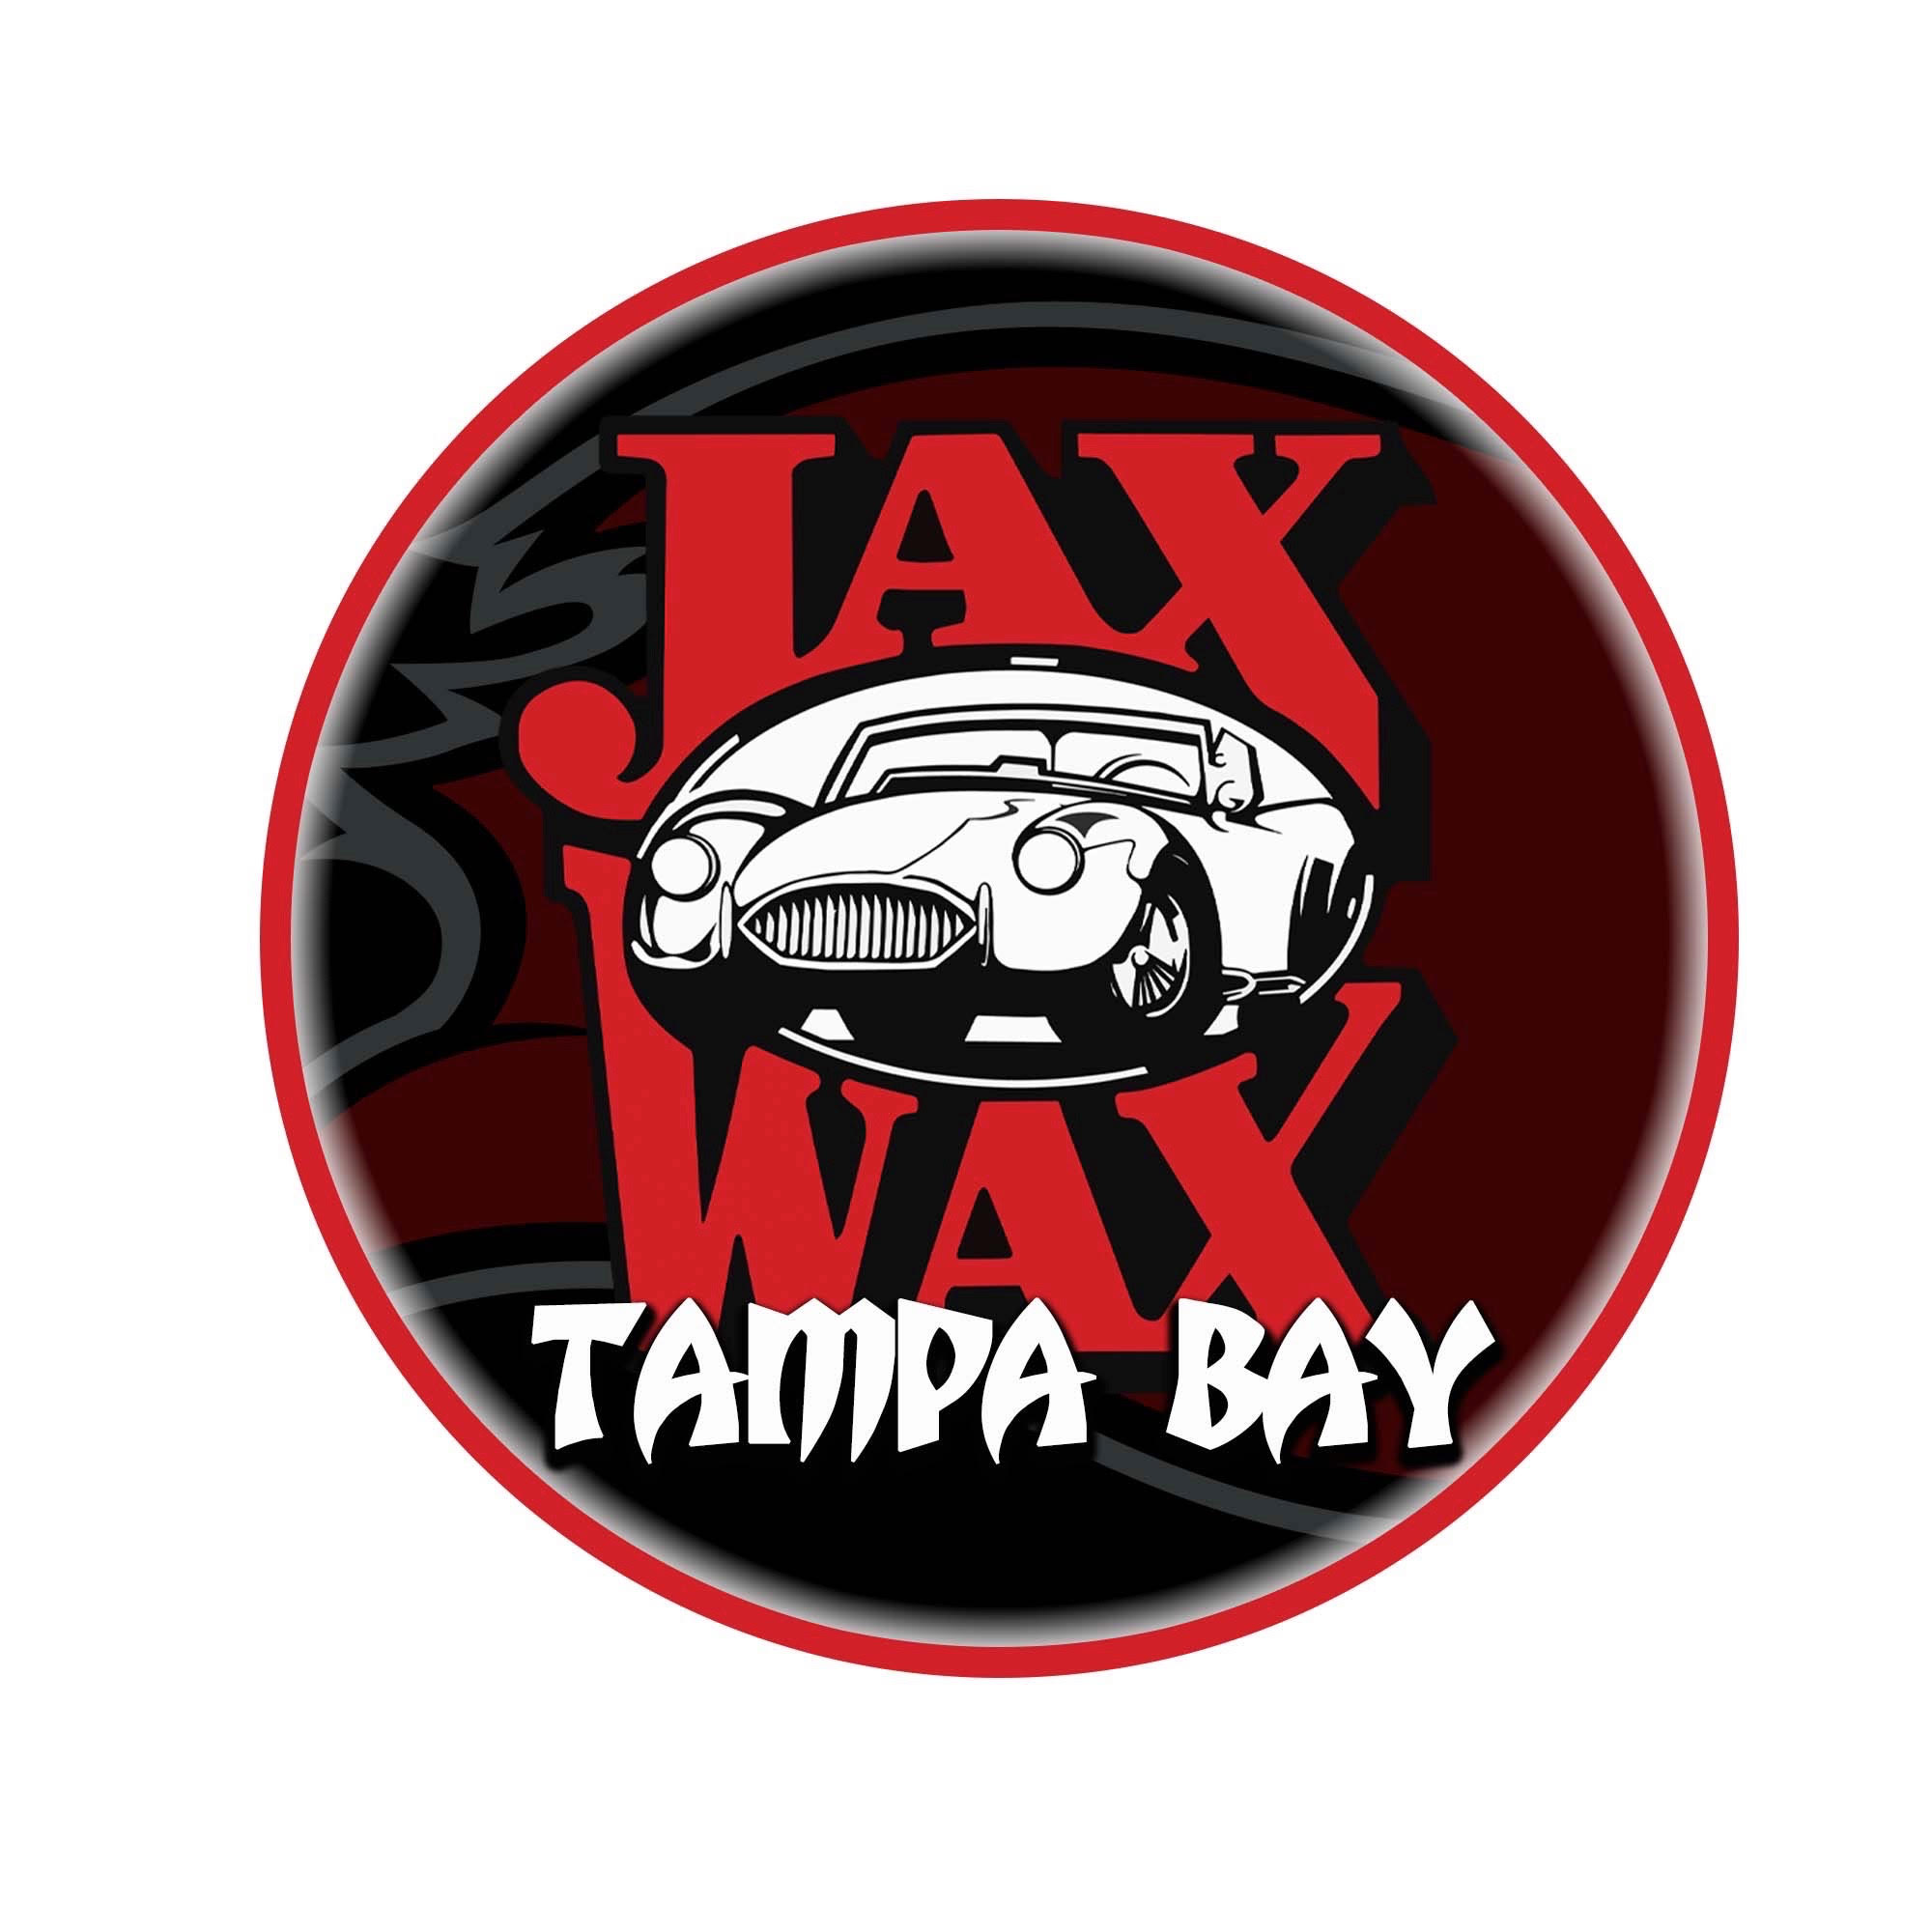 Jax Wax Car Care Products 